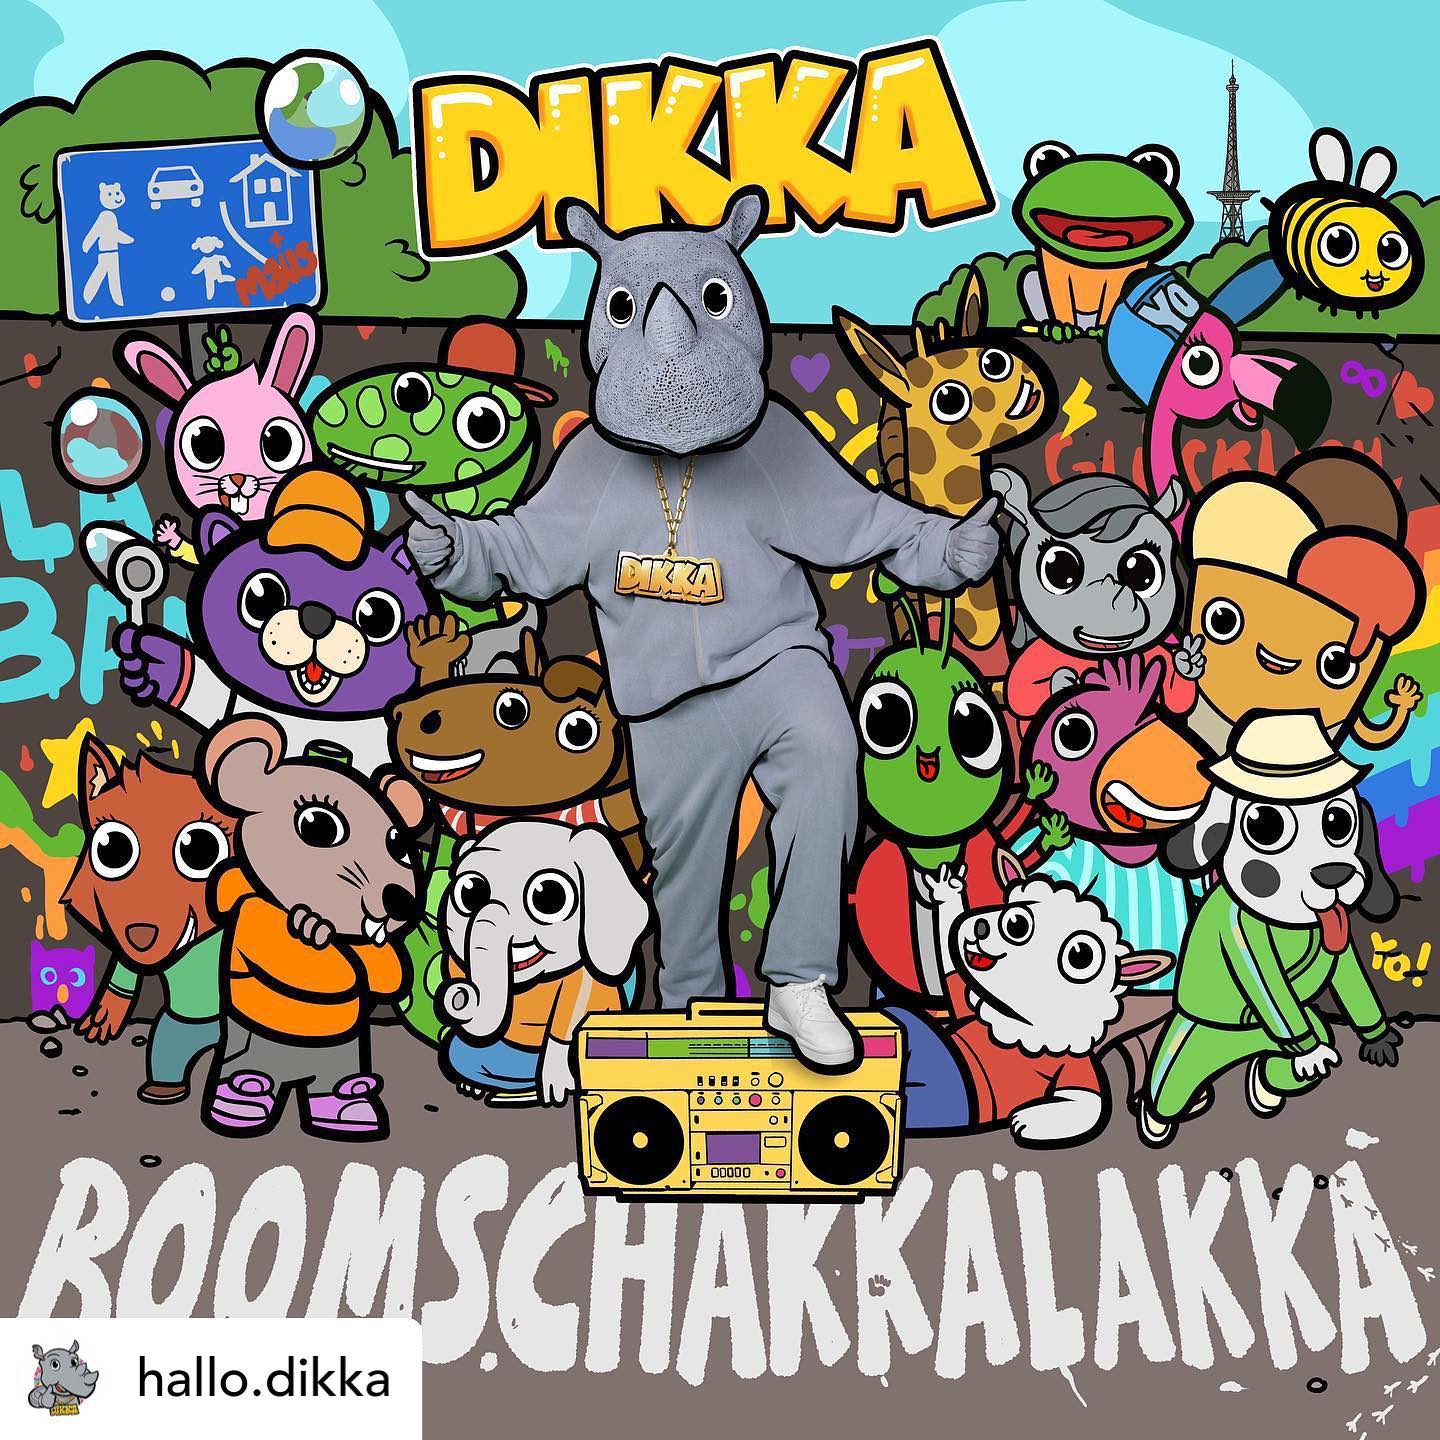 Unser Lieblingsnashorn Dikka hat ein neues Album gedroppt. Hip Hop für Kinder und für Oldschool Liebhaber. 

Meine Empfehlung!
Schon das erste Album haben wir dauernd gepumpt und geliebt. 

Falls ihr Dikka noch nicht kennt hört unbedingt mal rein. 100% Kinderfreundlich und 100% Partytauglich.